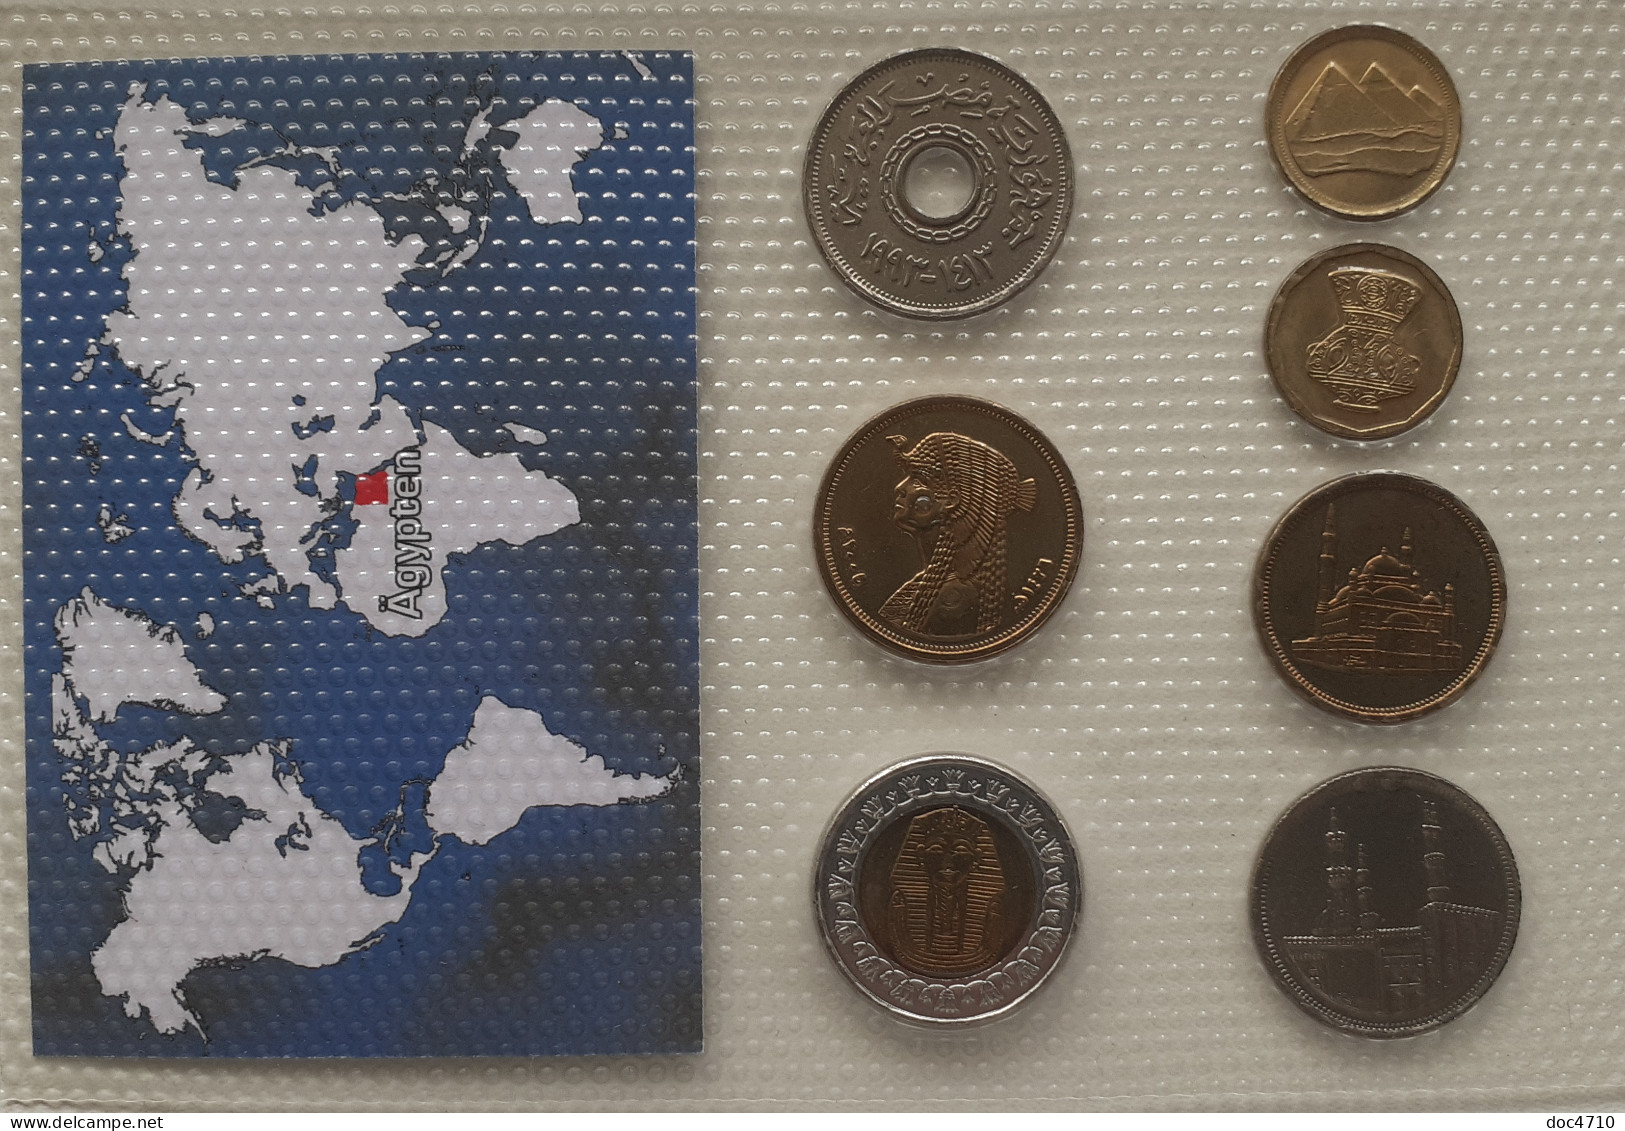 Egypt 1,5,10,20,25,50 Qirsh/piastres; 1 Pound 1984-2007, Set 7, Unc Sealed. - Egypte